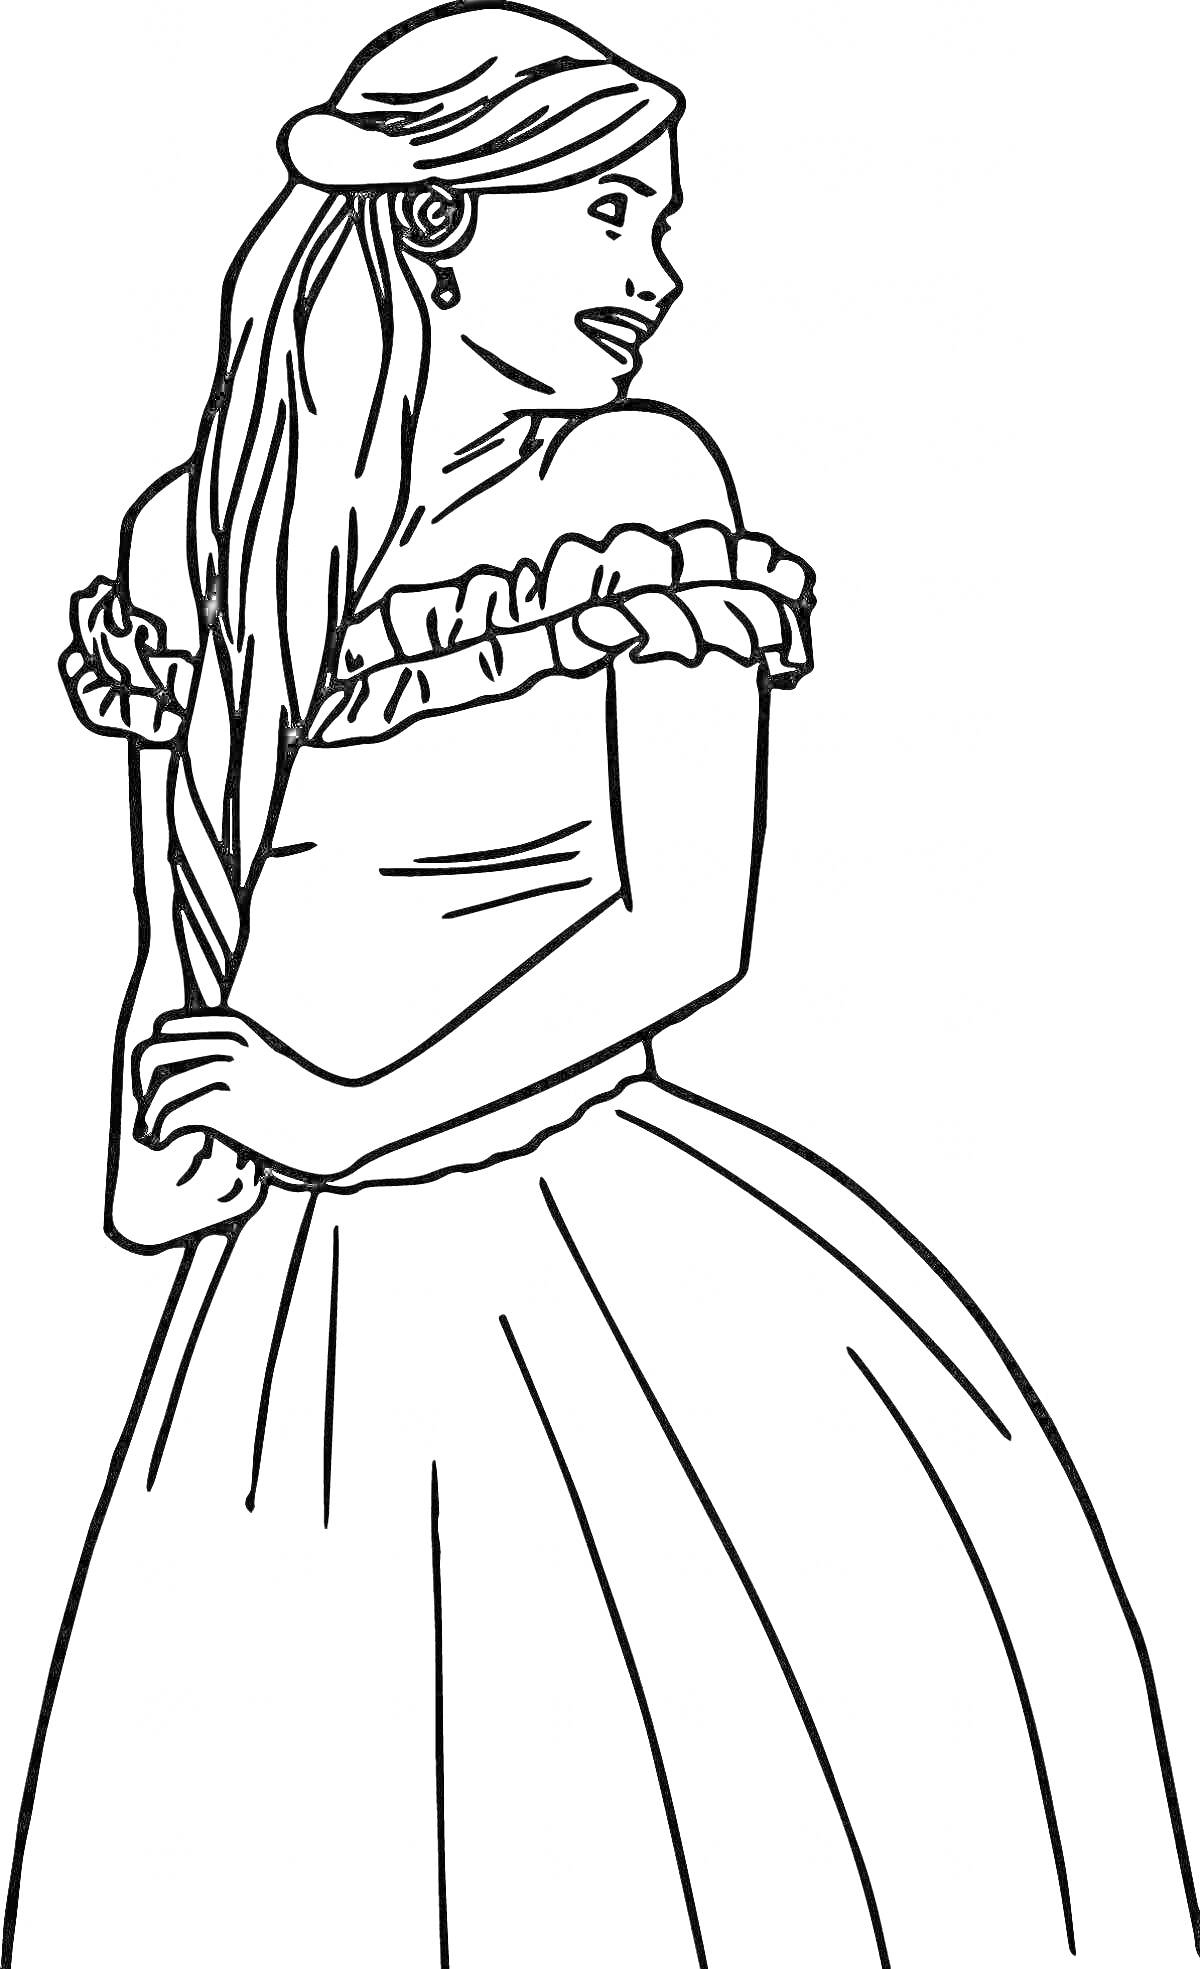 Раскраска Принцесса с длинными волосами в платье с открытыми плечами